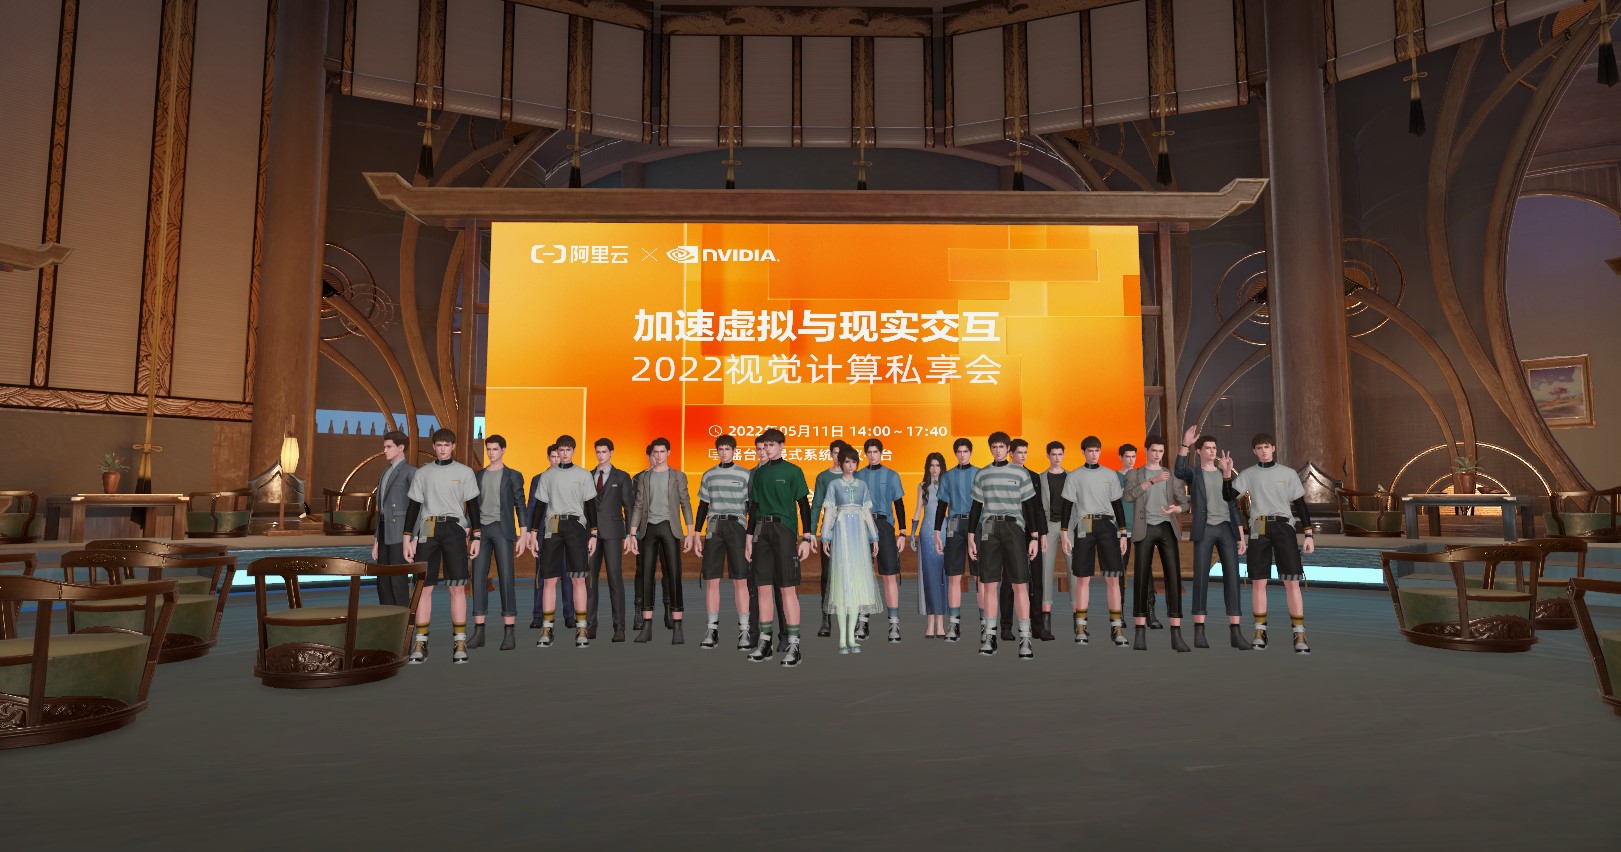 图片展示了一群穿着类似制服的虚拟角色站在一个现代风格会场内，背景是一个宣传屏幕，上面有中文文字和NVIDIA的标志。